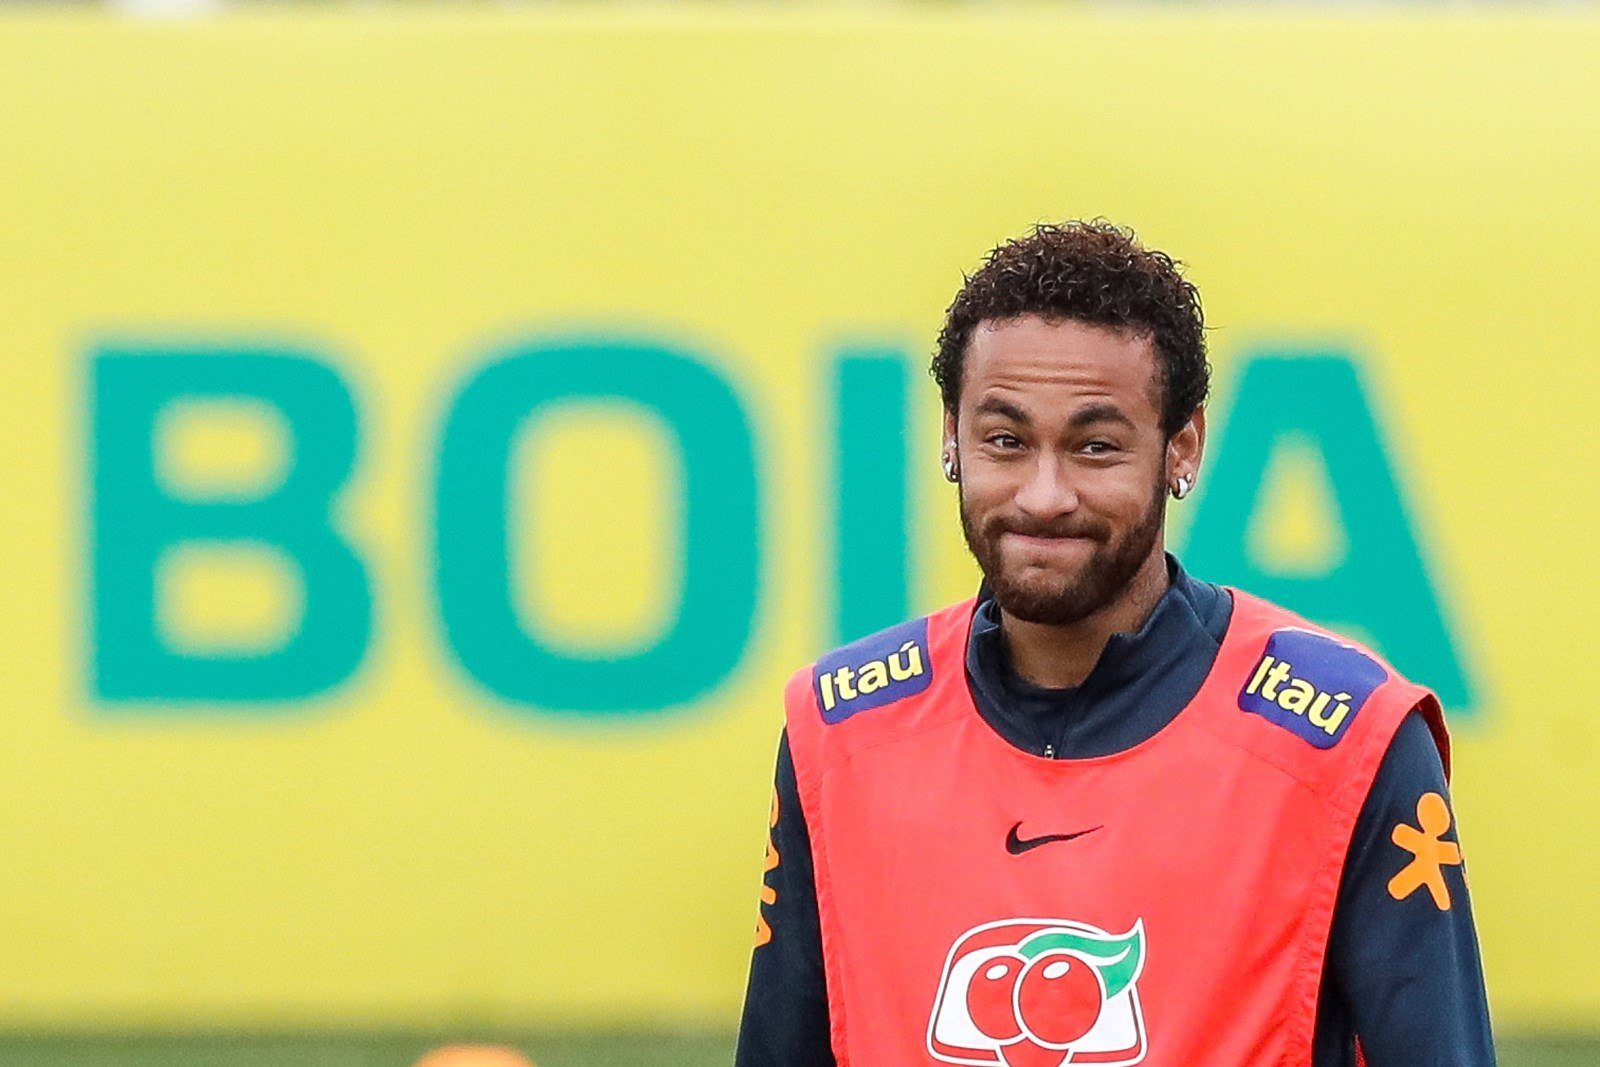 El entrenador del PSG confirma que Neymar ha pedido irse